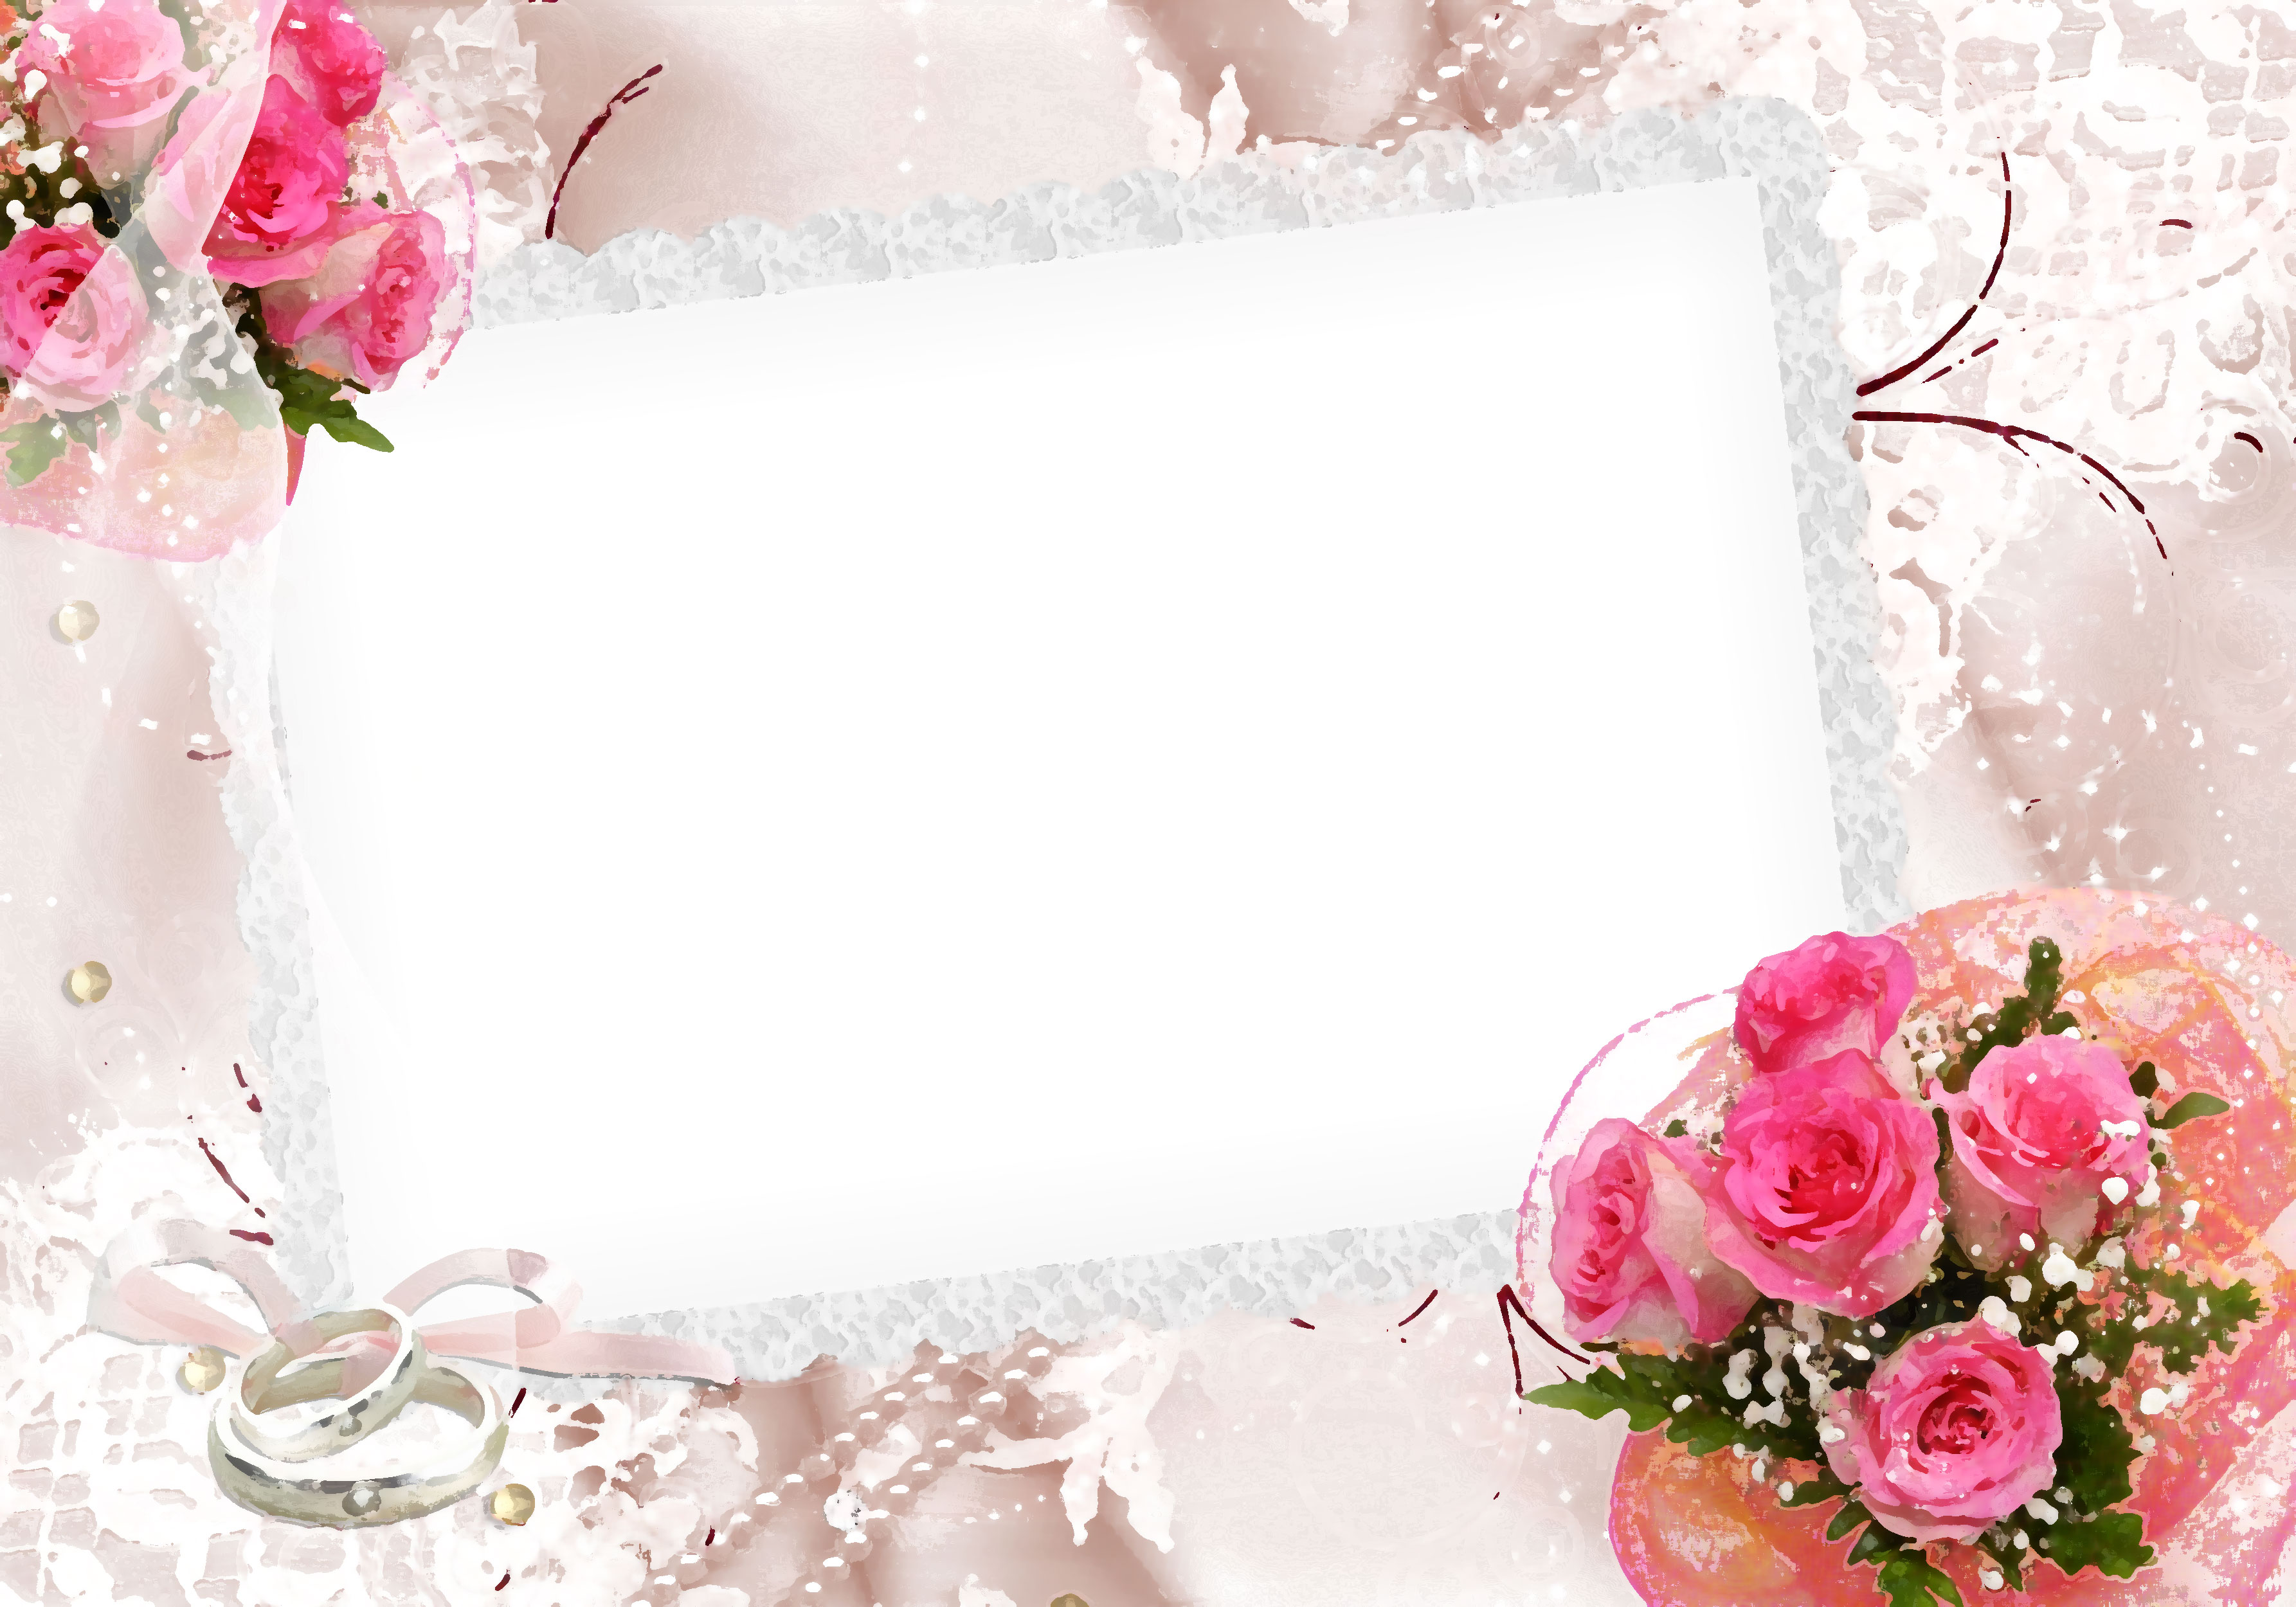 壁紙 背景イラスト 花のフレーム 外枠 No 134 ピンクバラ 花束 リング